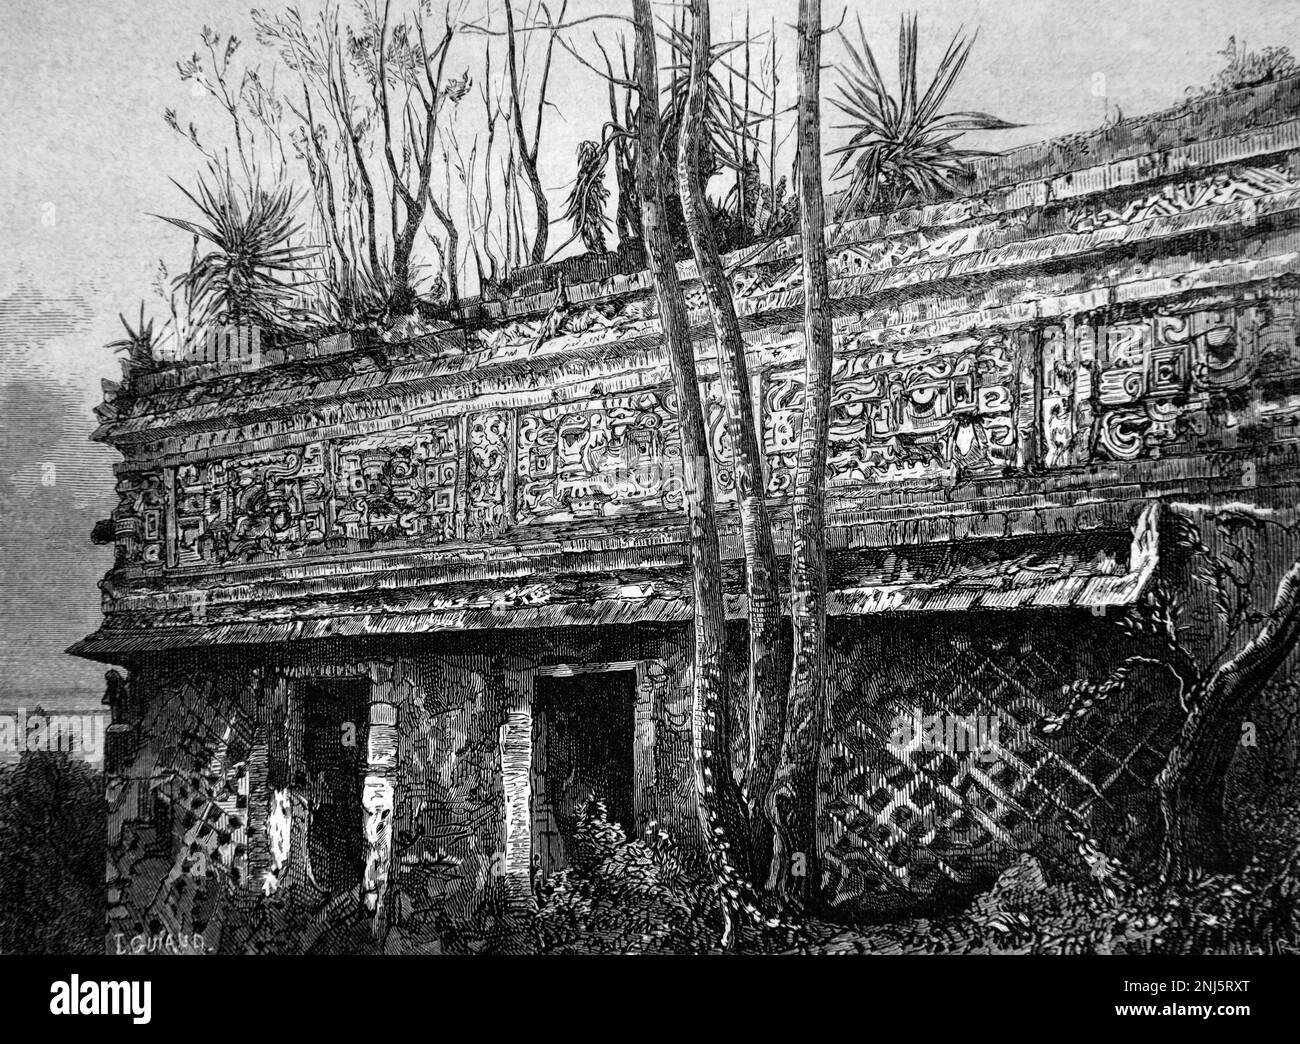 Façade nord du complexe Las Monjas, un palais de Goverment alias Nunnery Palace, à Chichen Itza, ville maya pré-colombienne Yucatan Mexique. Gravure ancienne ou illustration 1862 1862 Banque D'Images